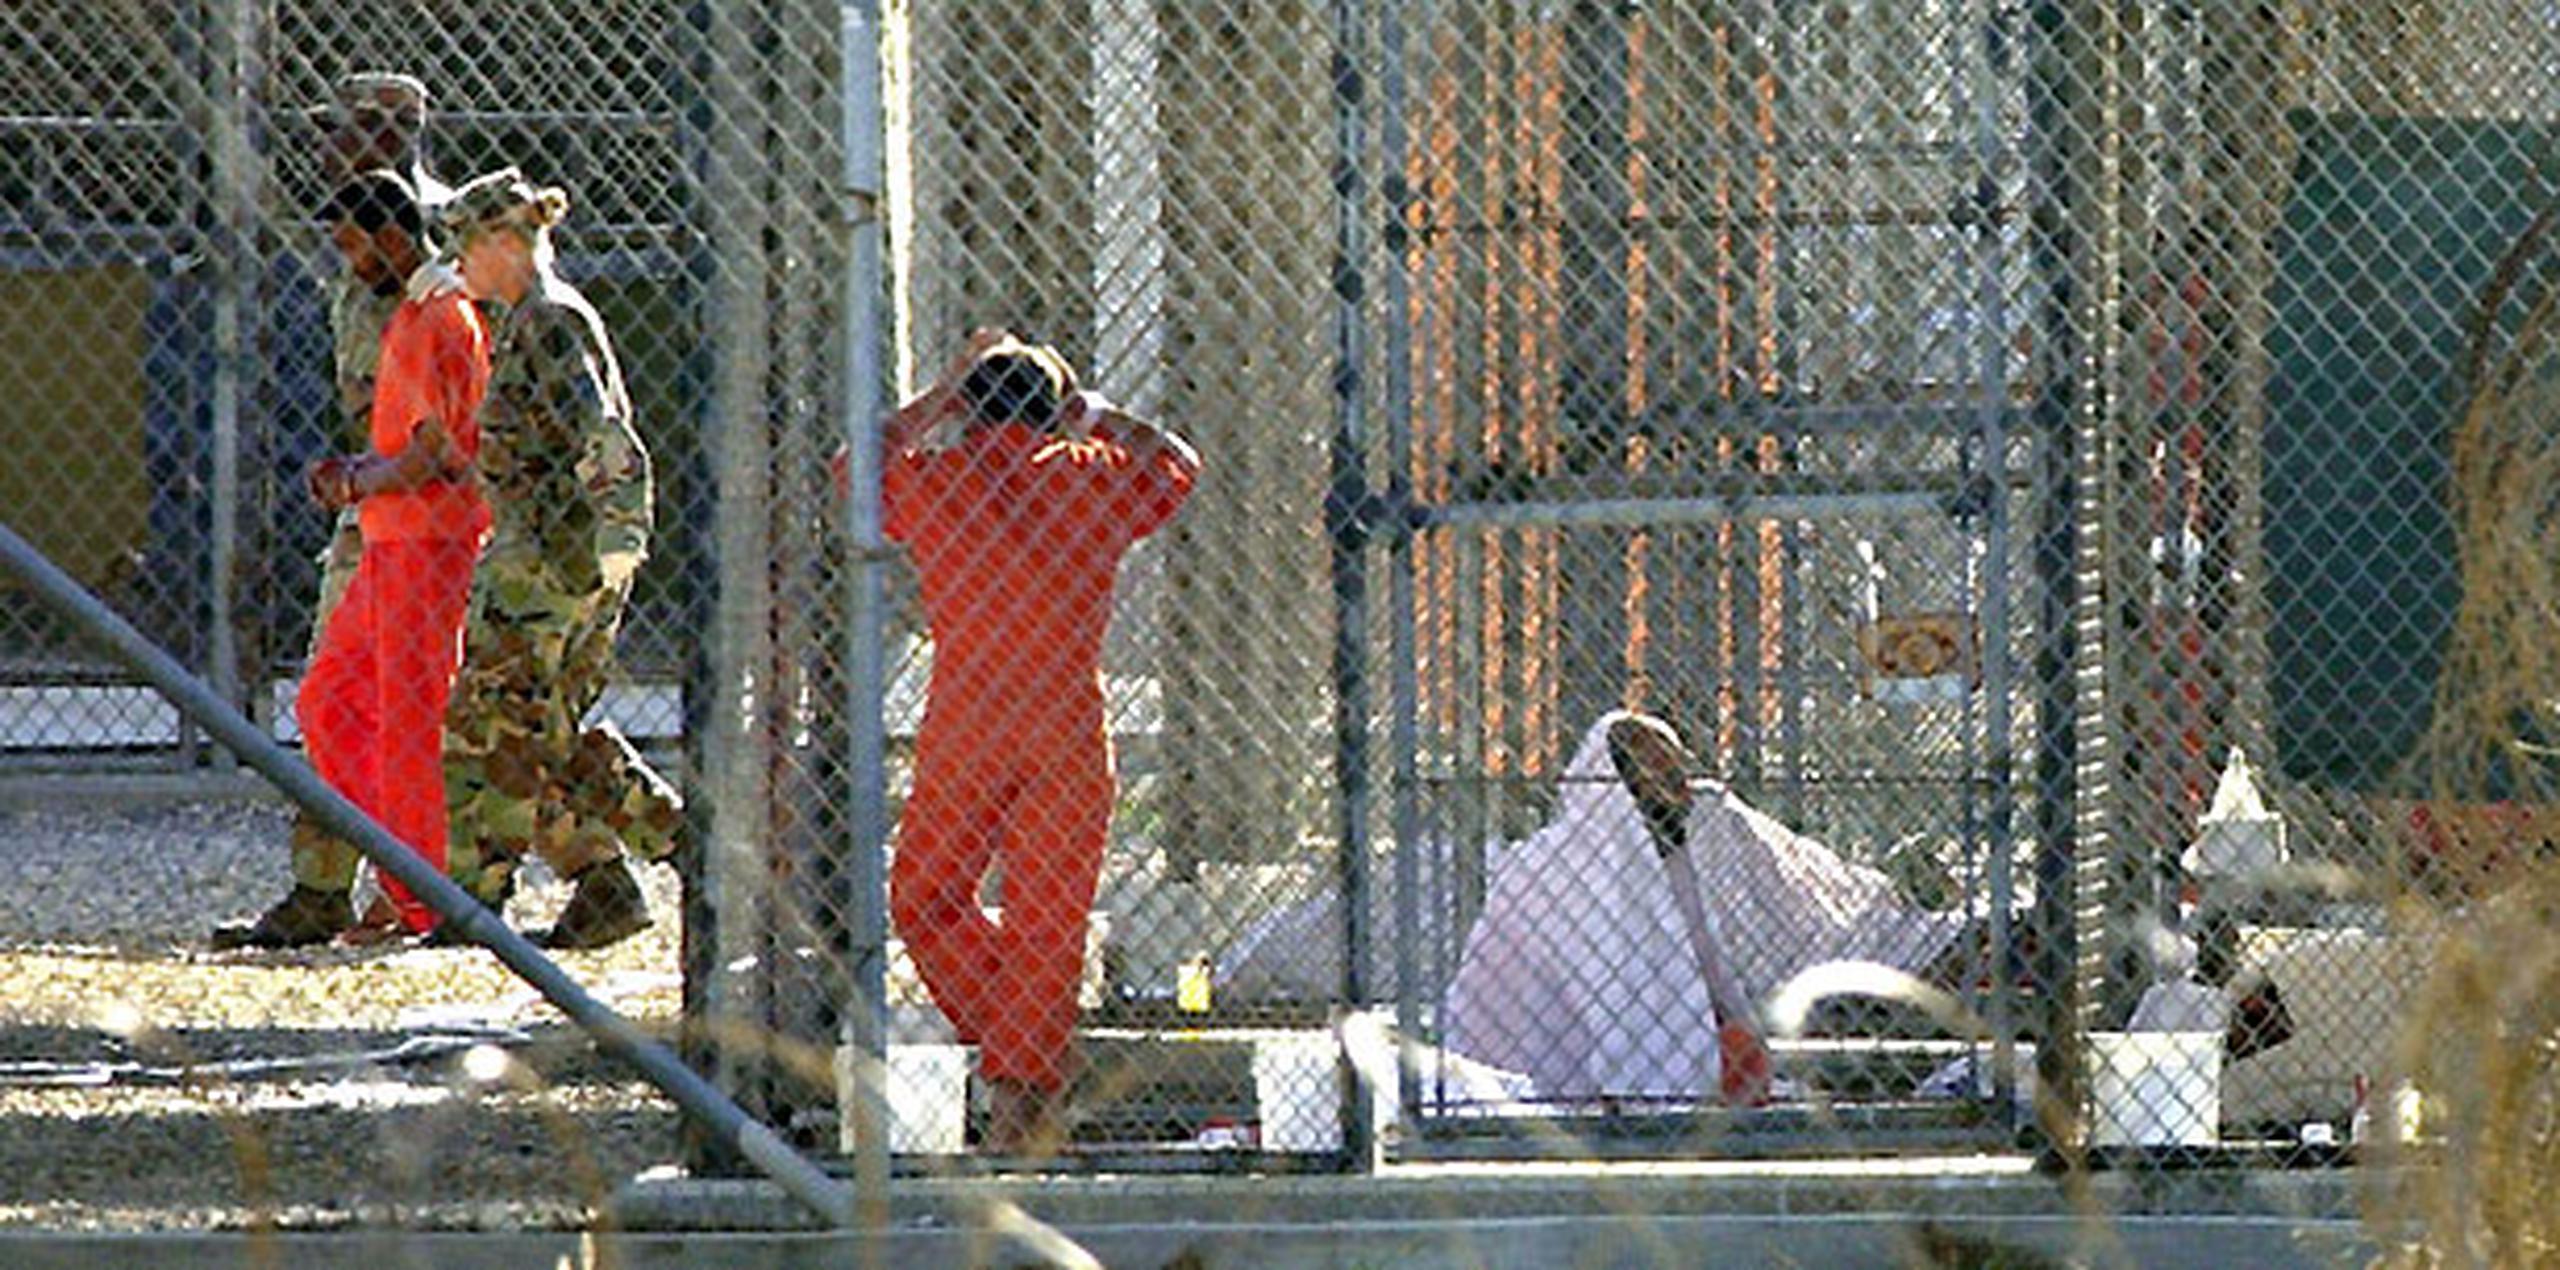 La huelga de hambre que secundan desde hace 93 días un centenar de esos presos ha disparado las alertas sobre las condiciones en Guantánamo y también la urgencia sobre su cierre. (AP / Thomas van Houtryve)